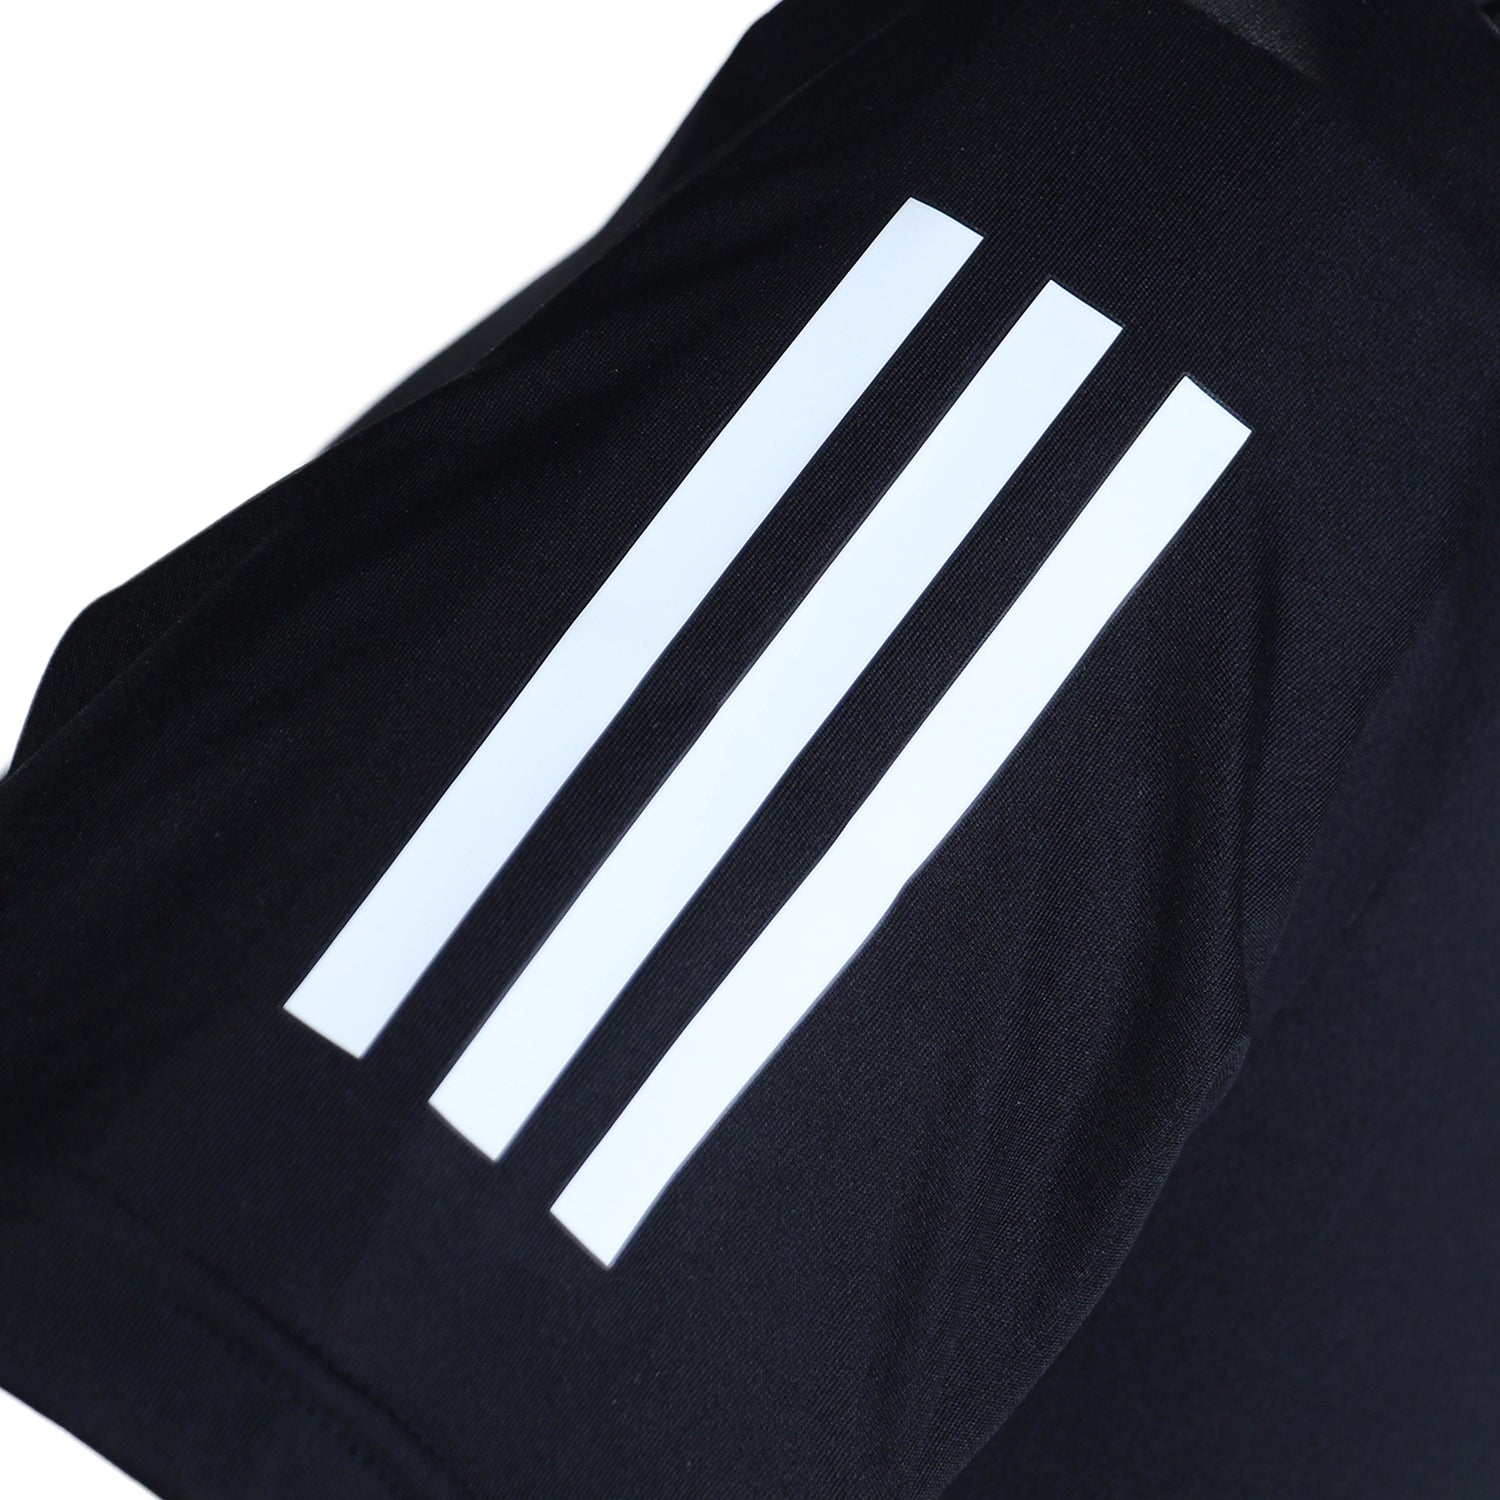 Adidas T-shirt Club 3-Stripes pour homme HS3261